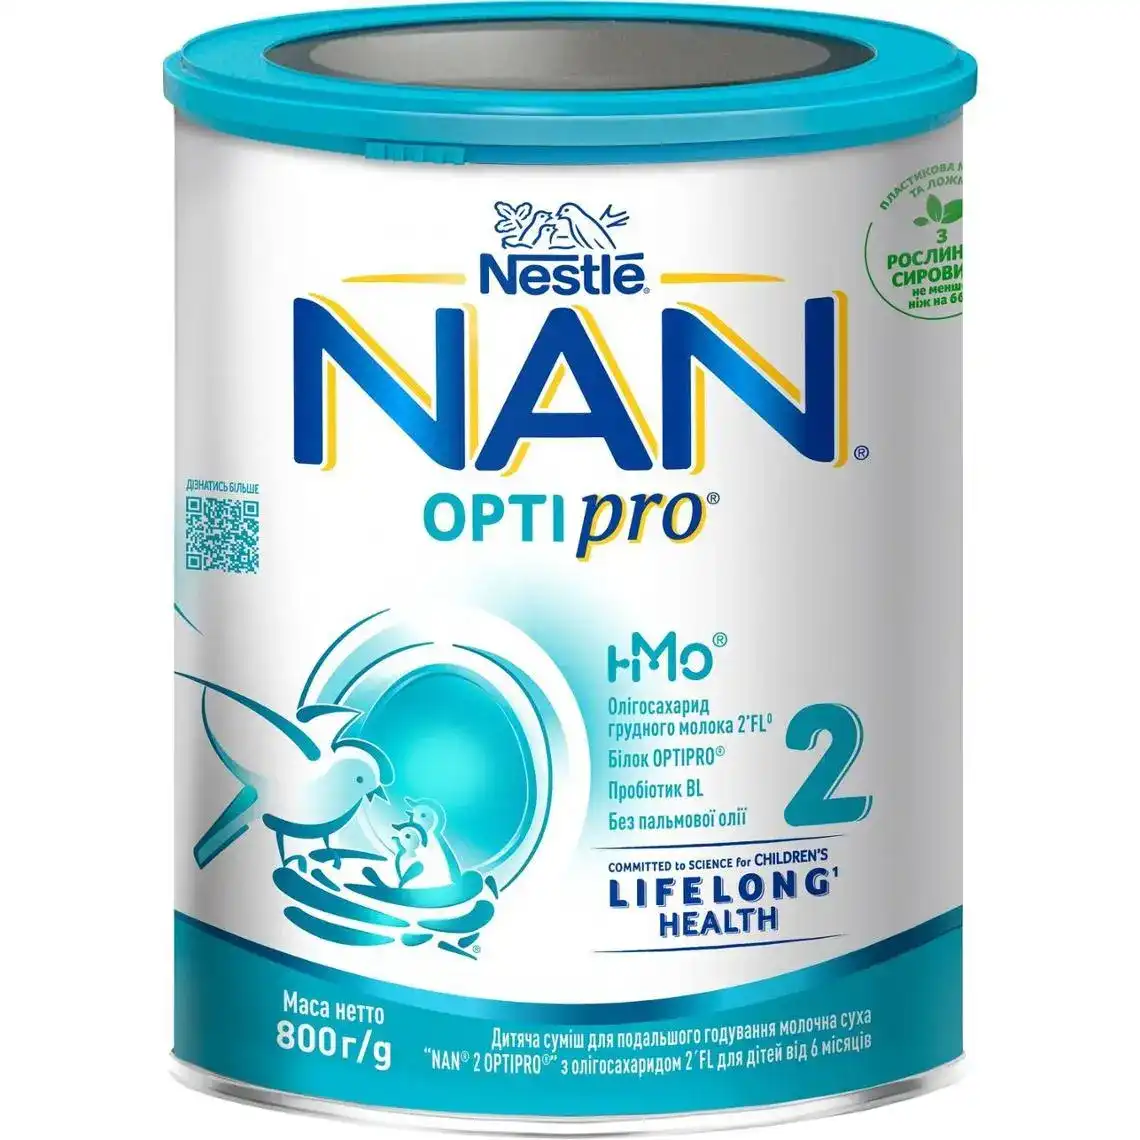 Дитяча суміш молочна суха NAN 2 OPTIPRO з олігосахаридом 2`FL для дітей від 6 місяців, 800 г